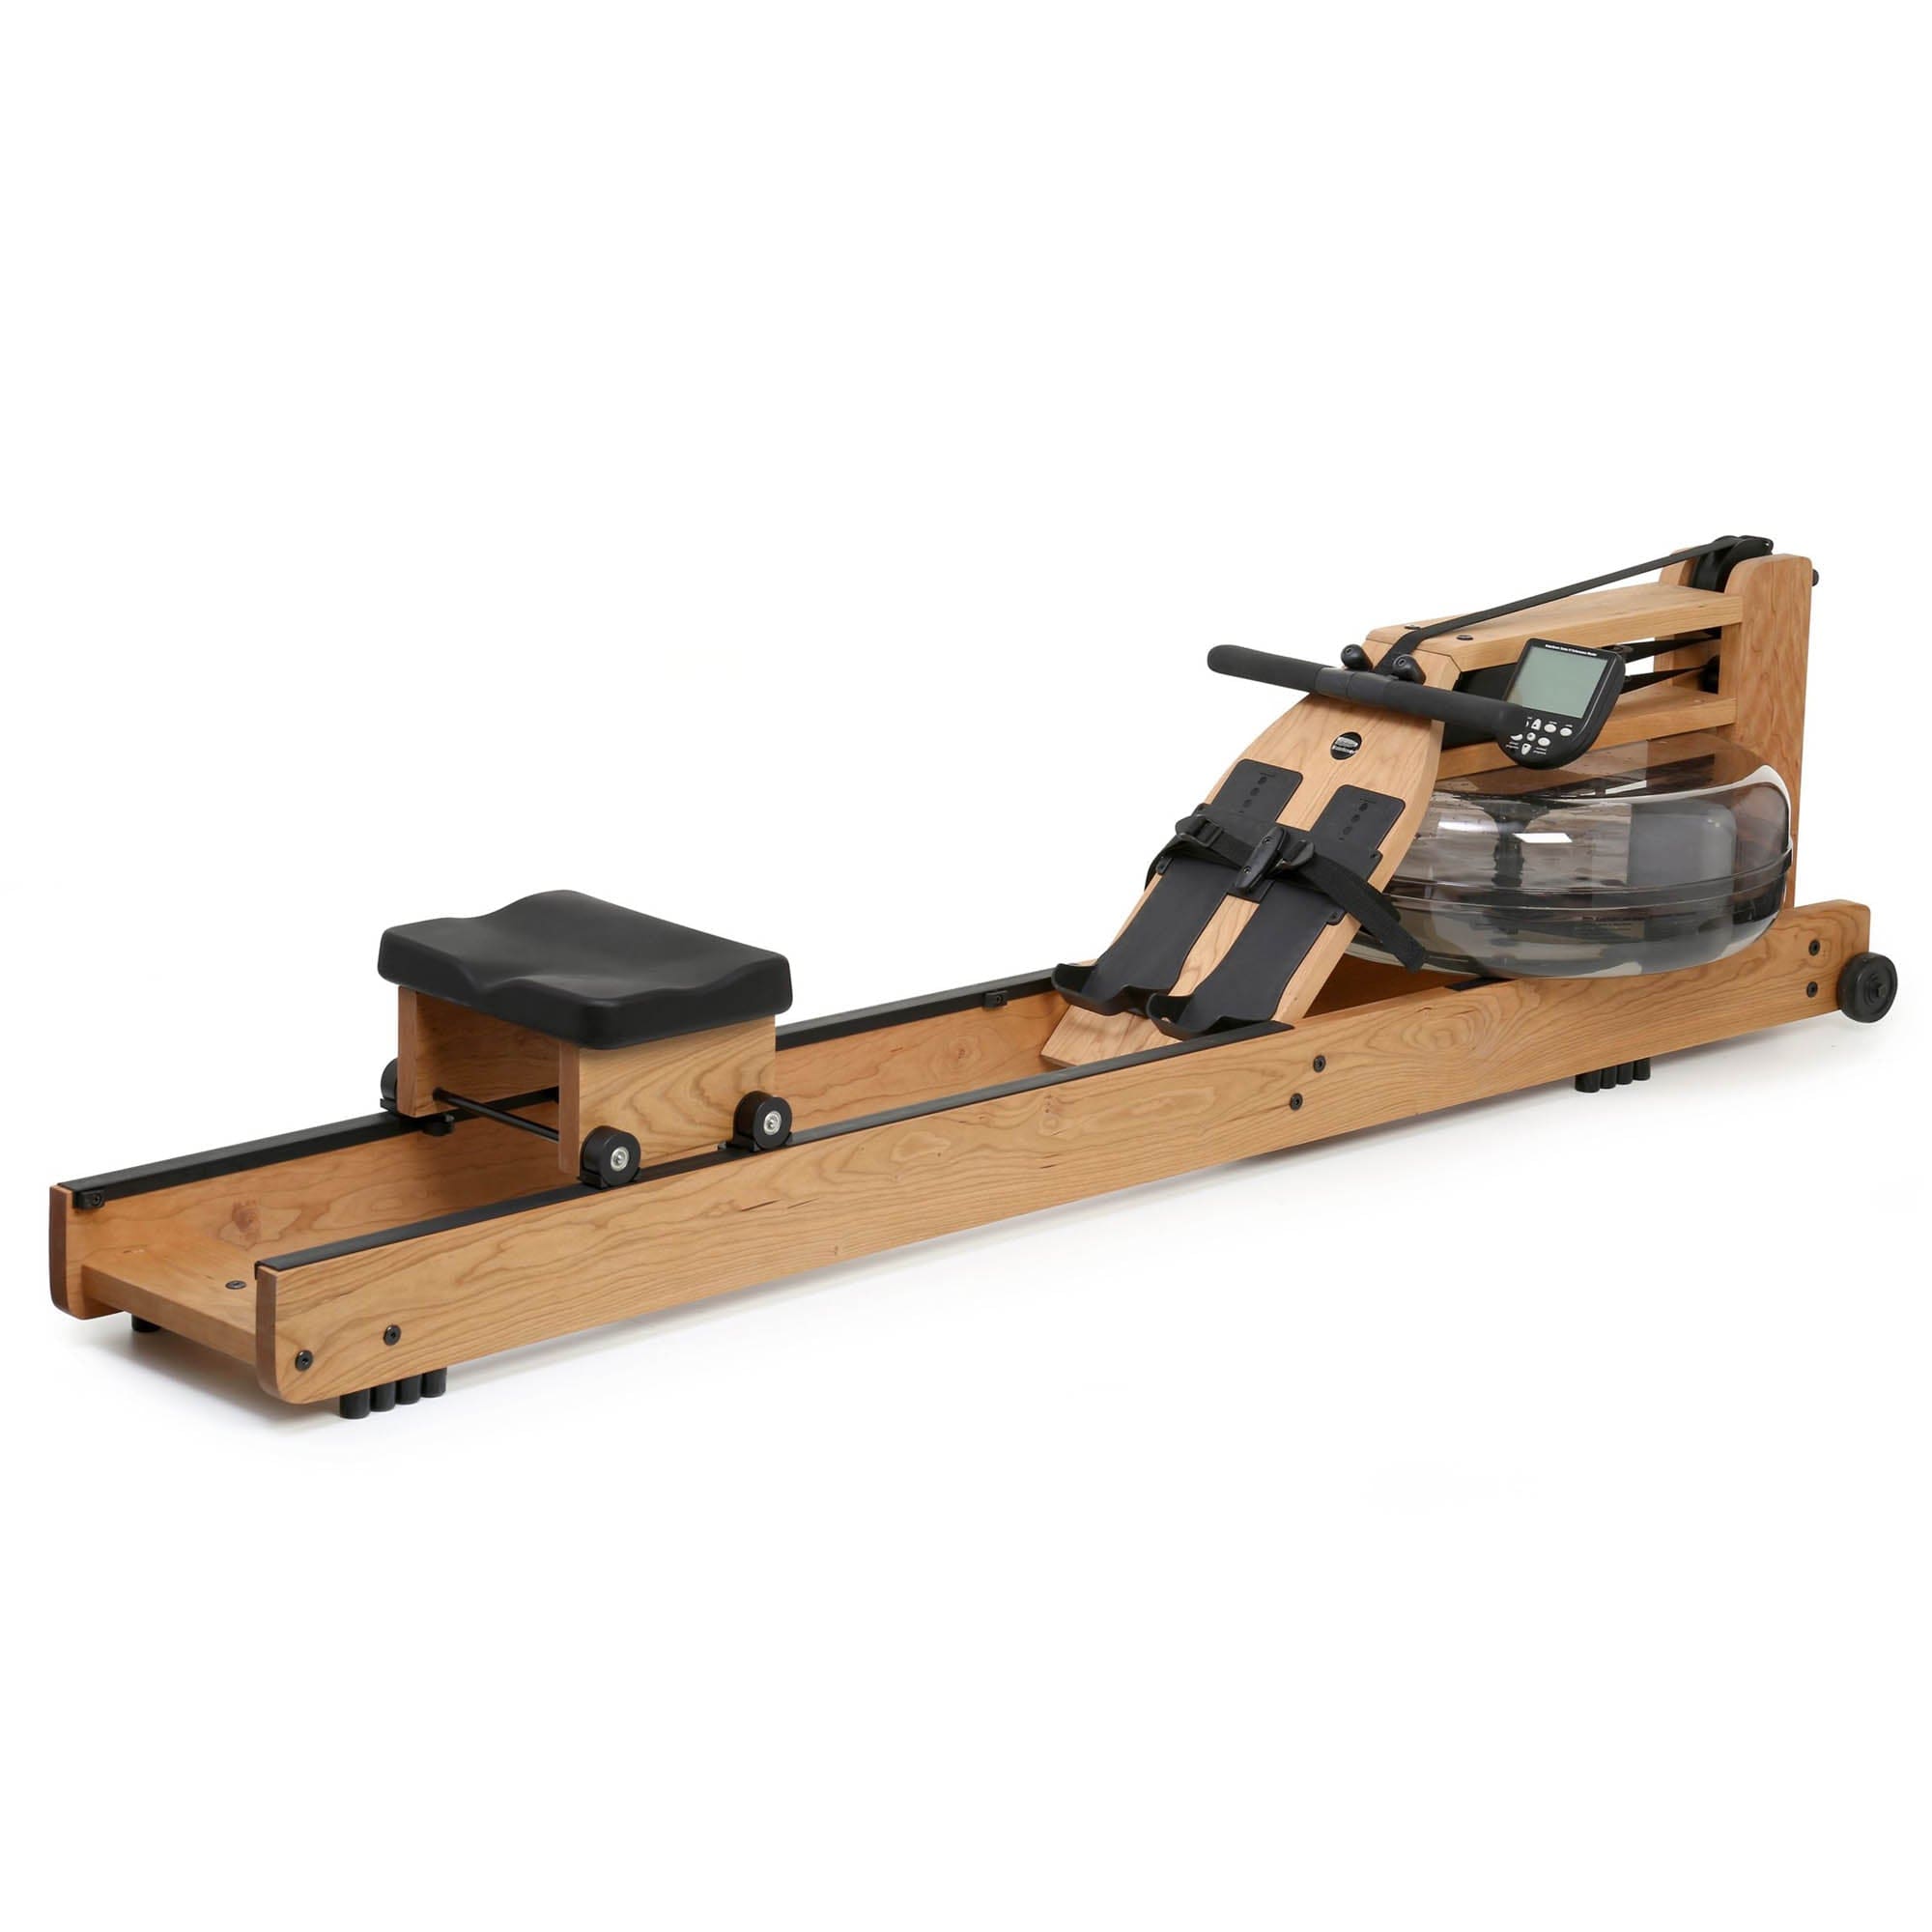 WaterRower Original Series Cherry Rowing Machine with S4 Monitor